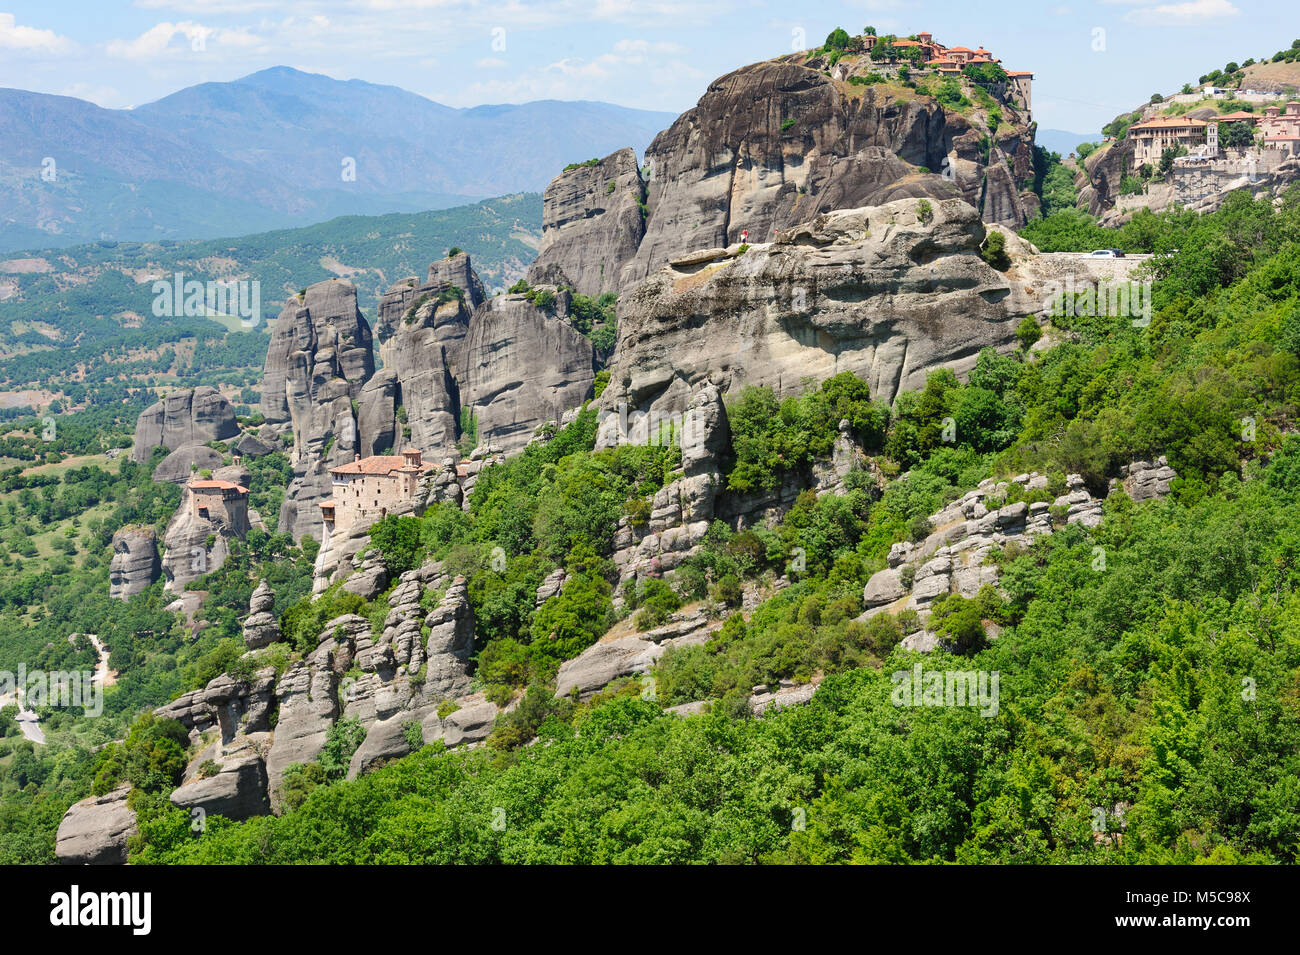 Monastère de montagne dans la région de météores, Grèce Banque D'Images